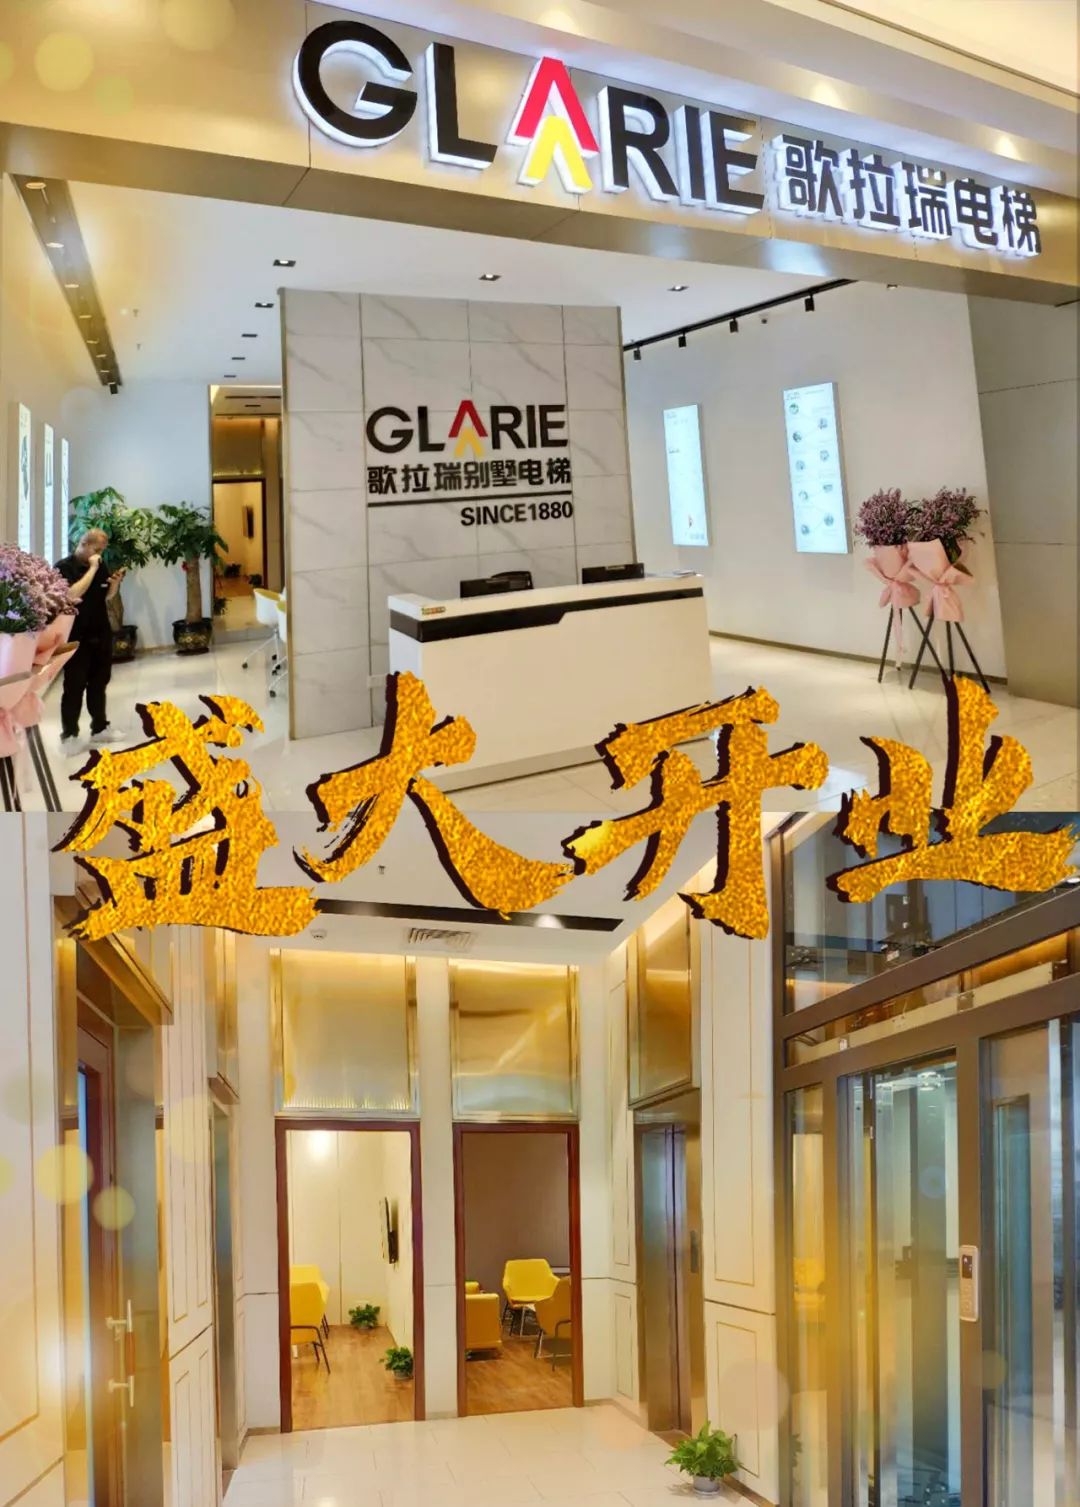 歌拉瑞别墅电梯9s体验馆(福州)